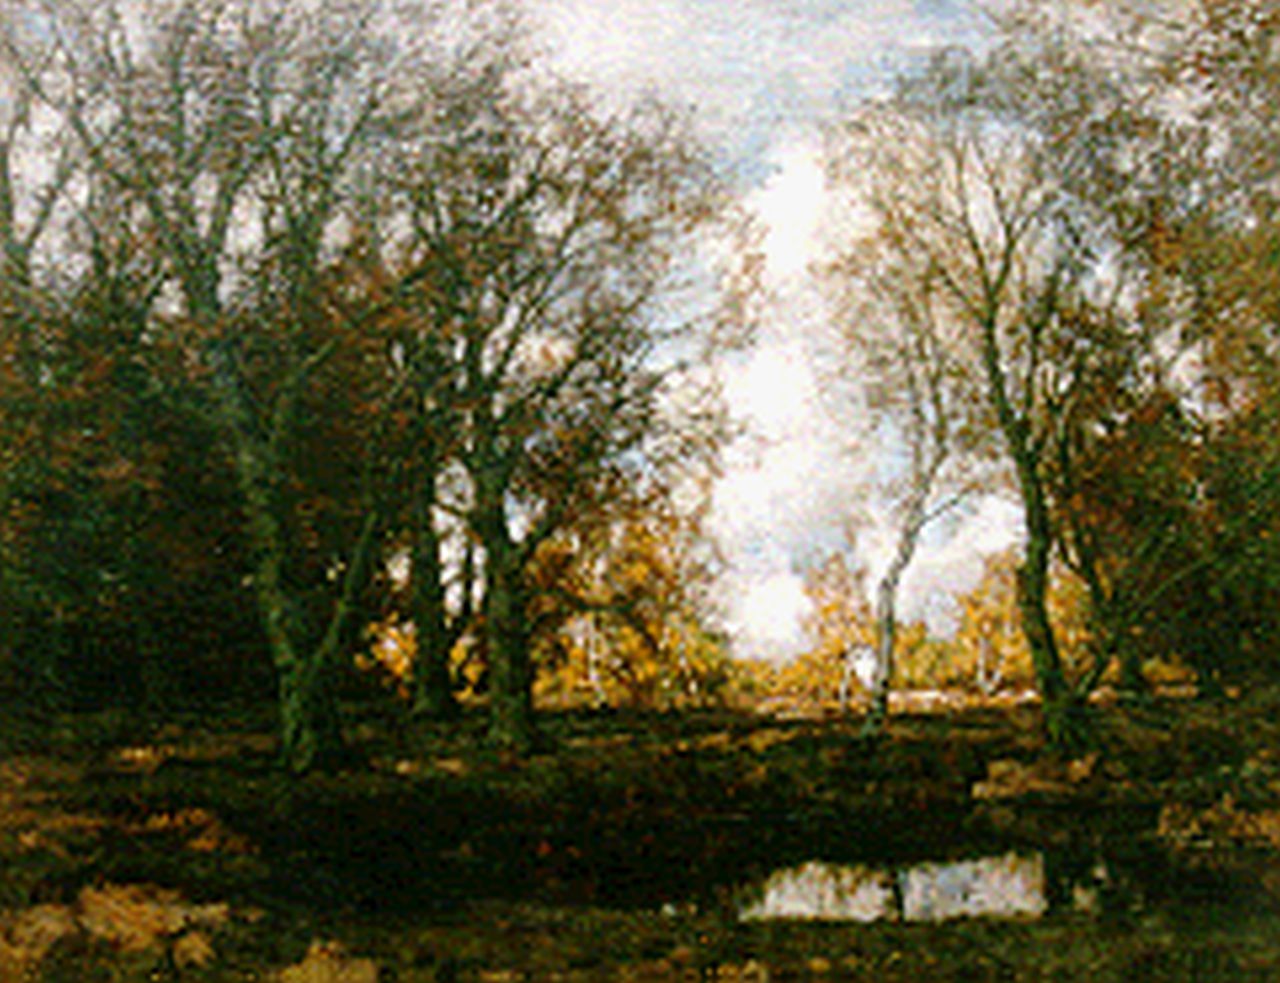 Gorter A.M.  | 'Arnold' Marc Gorter, Vordense beek in een herfstlandschap, olieverf op doek 75,5 x 95,5 cm, gesigneerd rechtsonder